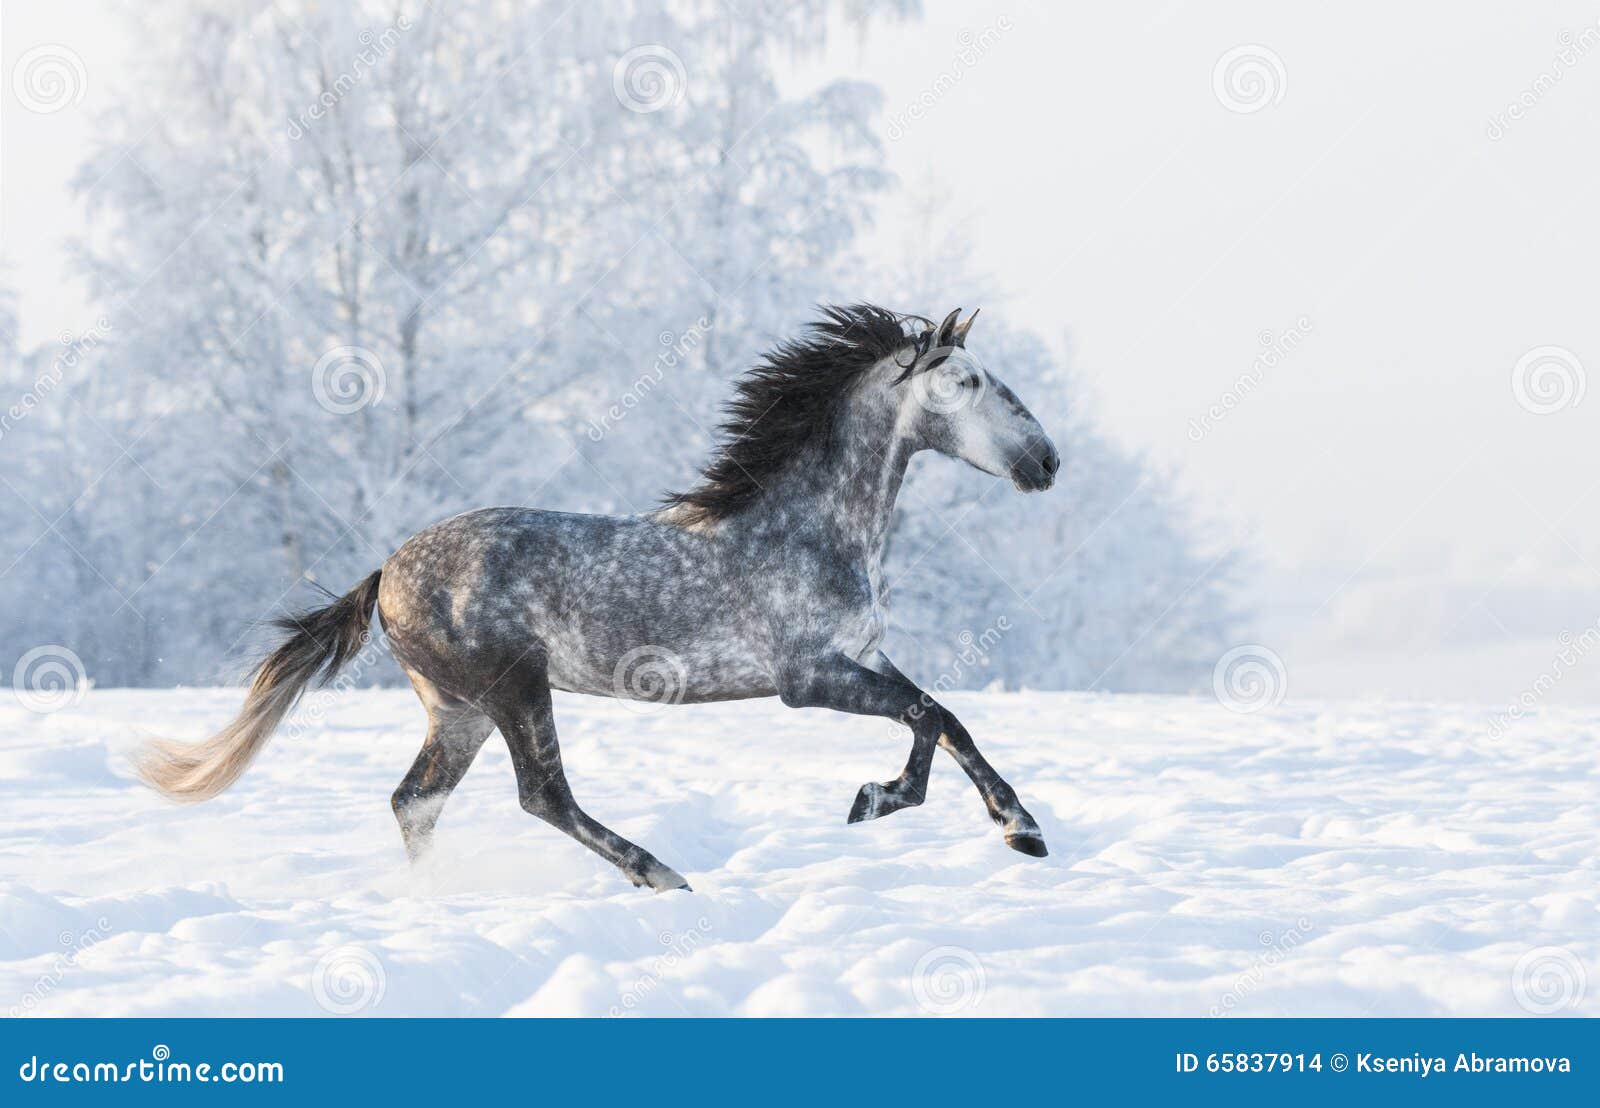 Dapple Gray Horse Snowy Field Stock Photos - Free & Royalty-Free